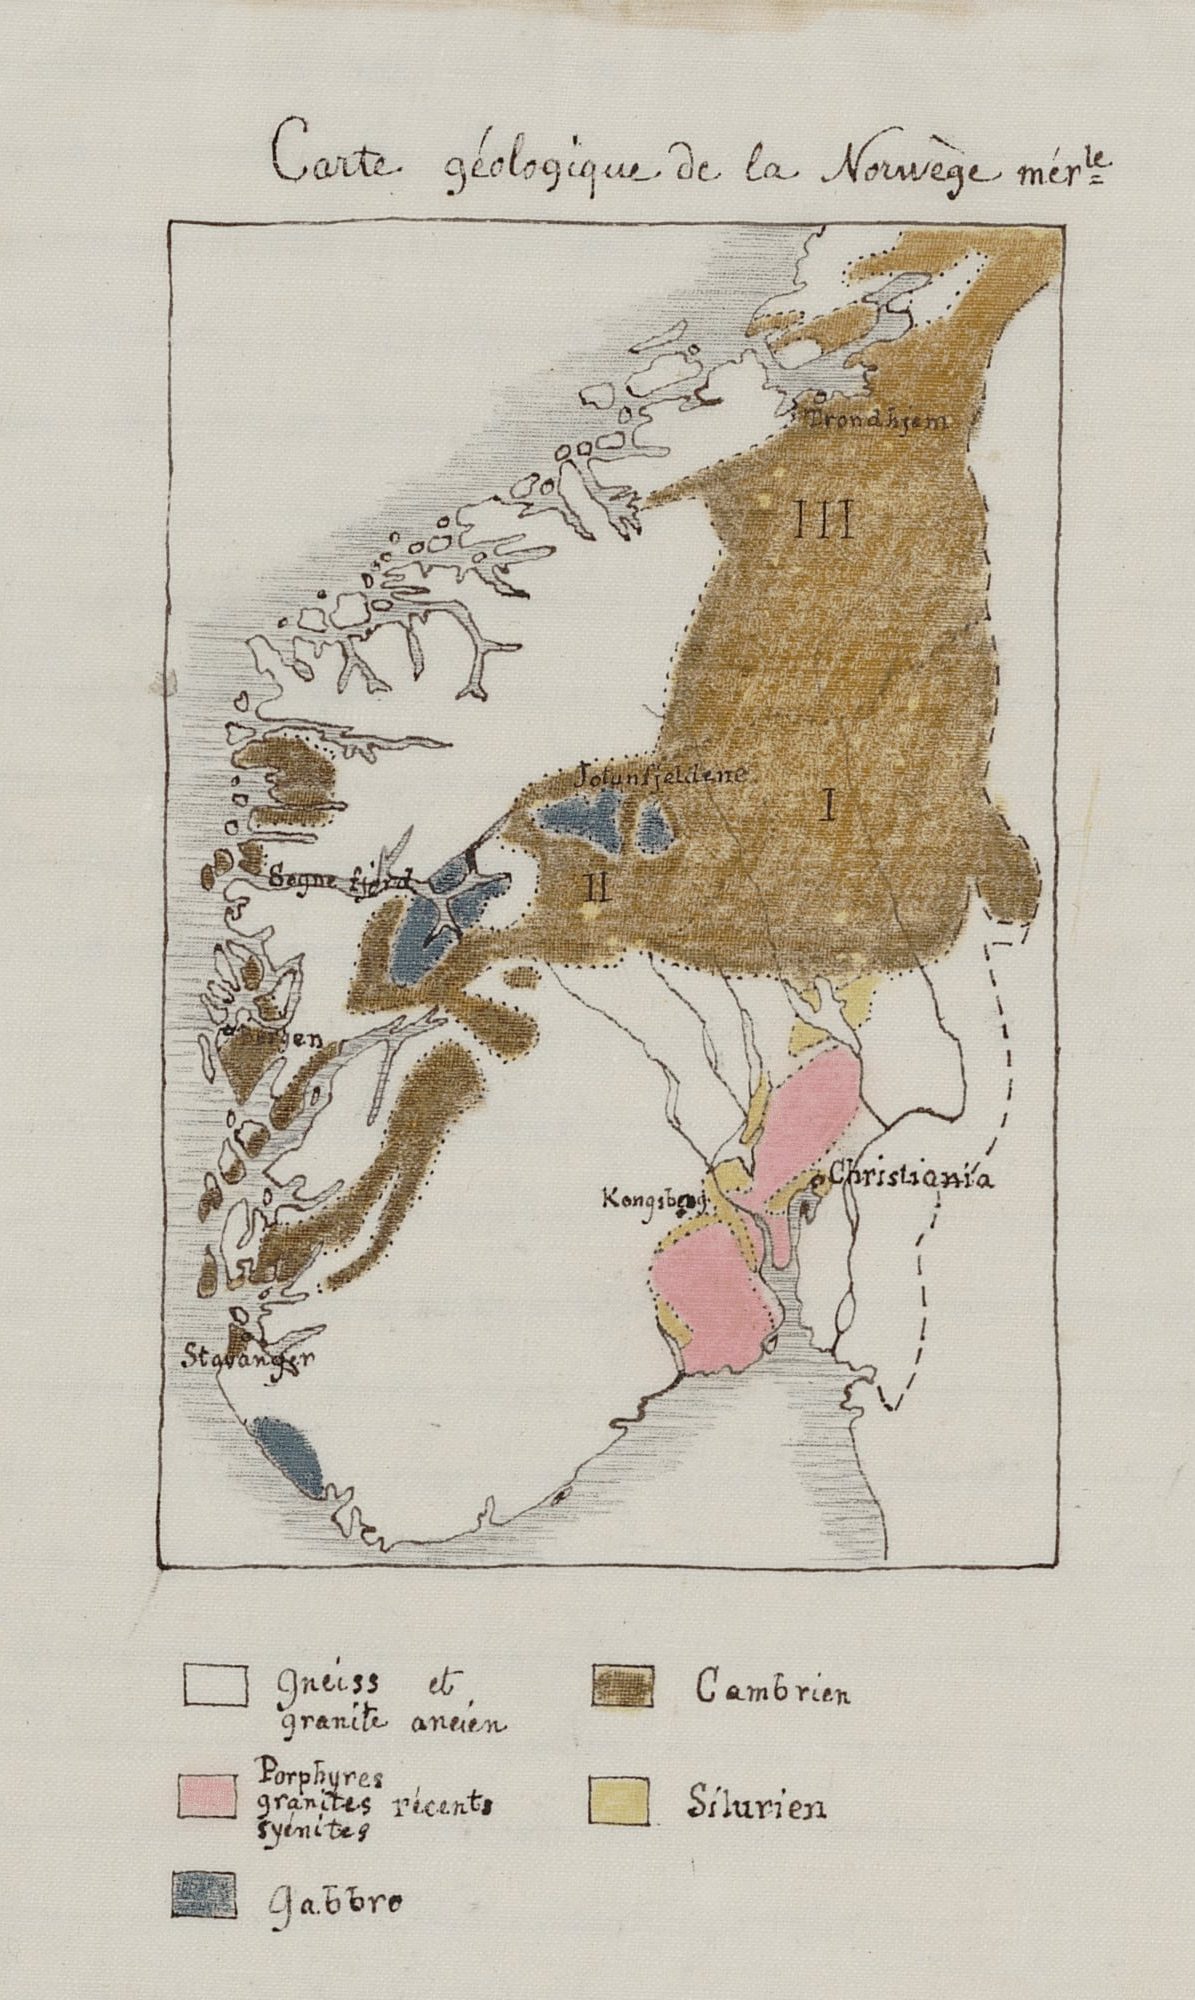 Carte géologique de la Norvège, Lucien Fèvre, 1886, M 1886 (1061)